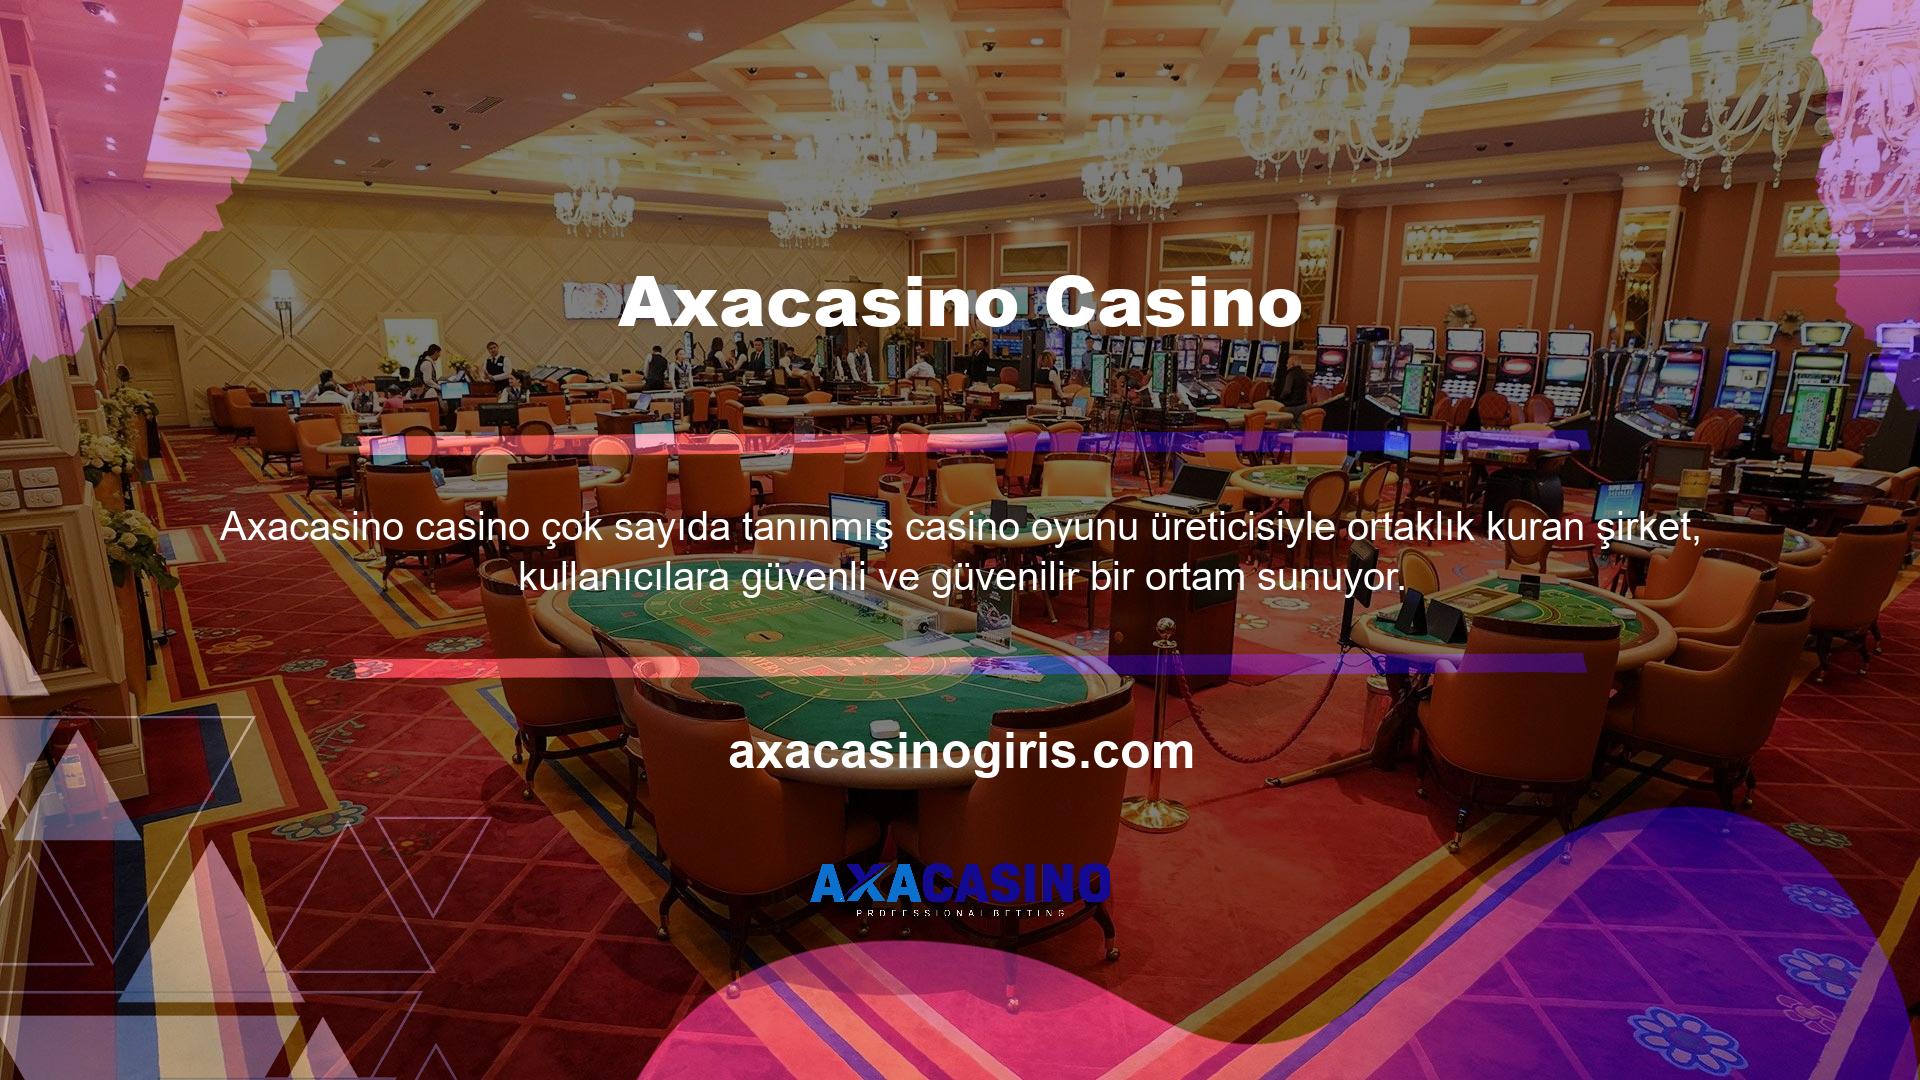 Oyun örnekleri arasında aşağıdakiler gibi çeşitli üst düzey öğeler yer alır:Axacasino Rulet Ve Blackjack  Casino Canlı bingo mevcuttur ve 3D slot türü oynanabilir